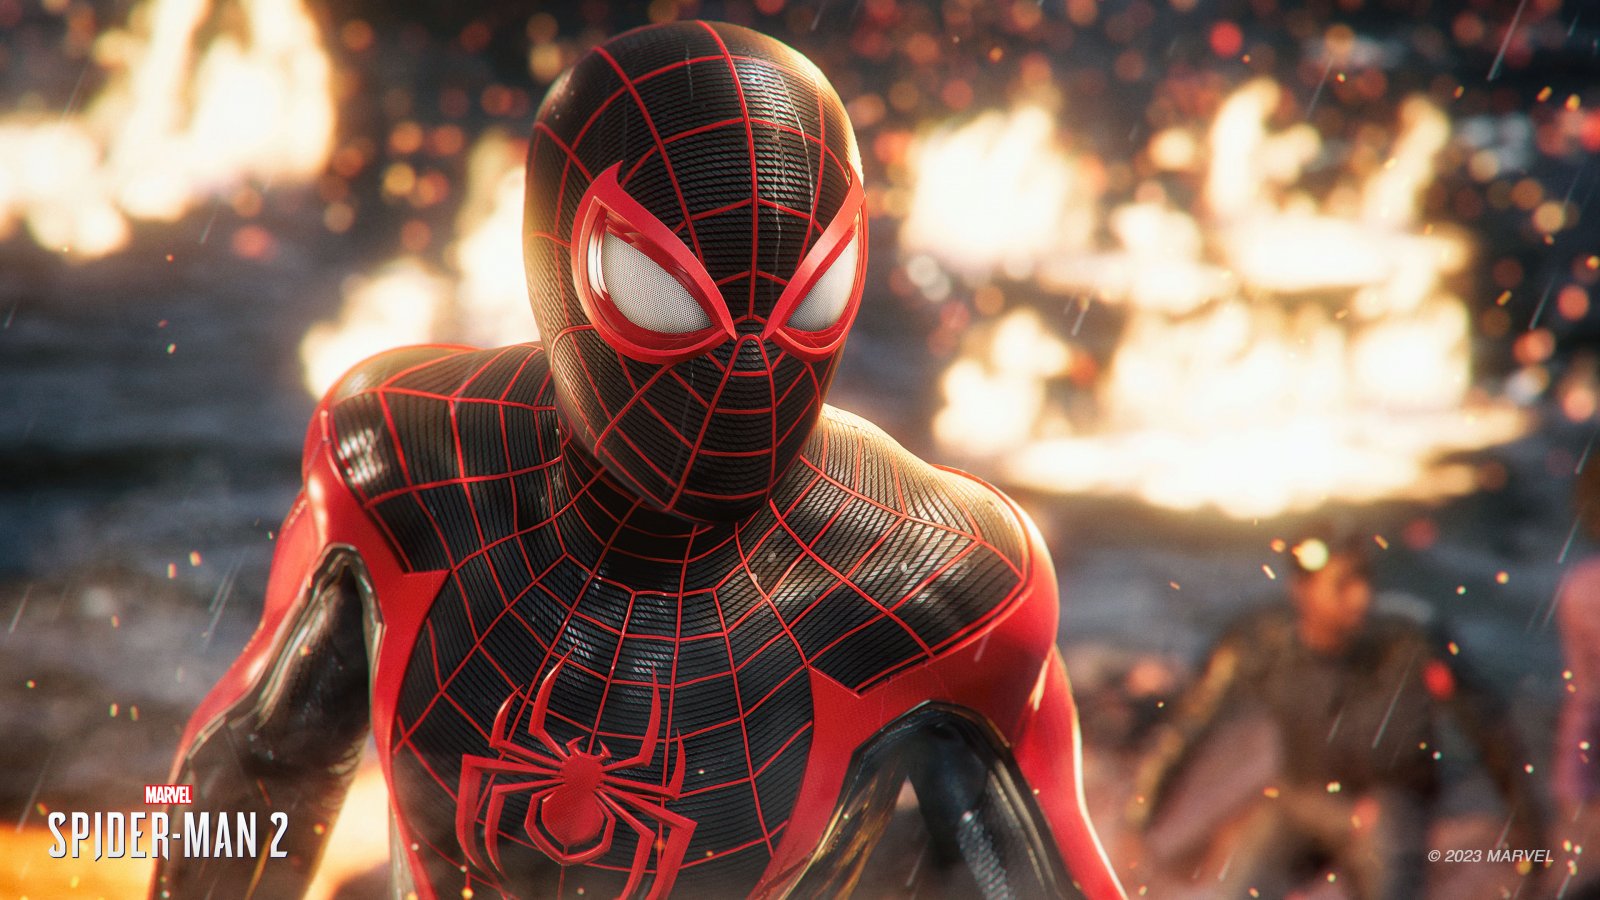 Marvel's Spider-Man 2 ha diverse schermate di avvio che si alternano, rivelano le foto